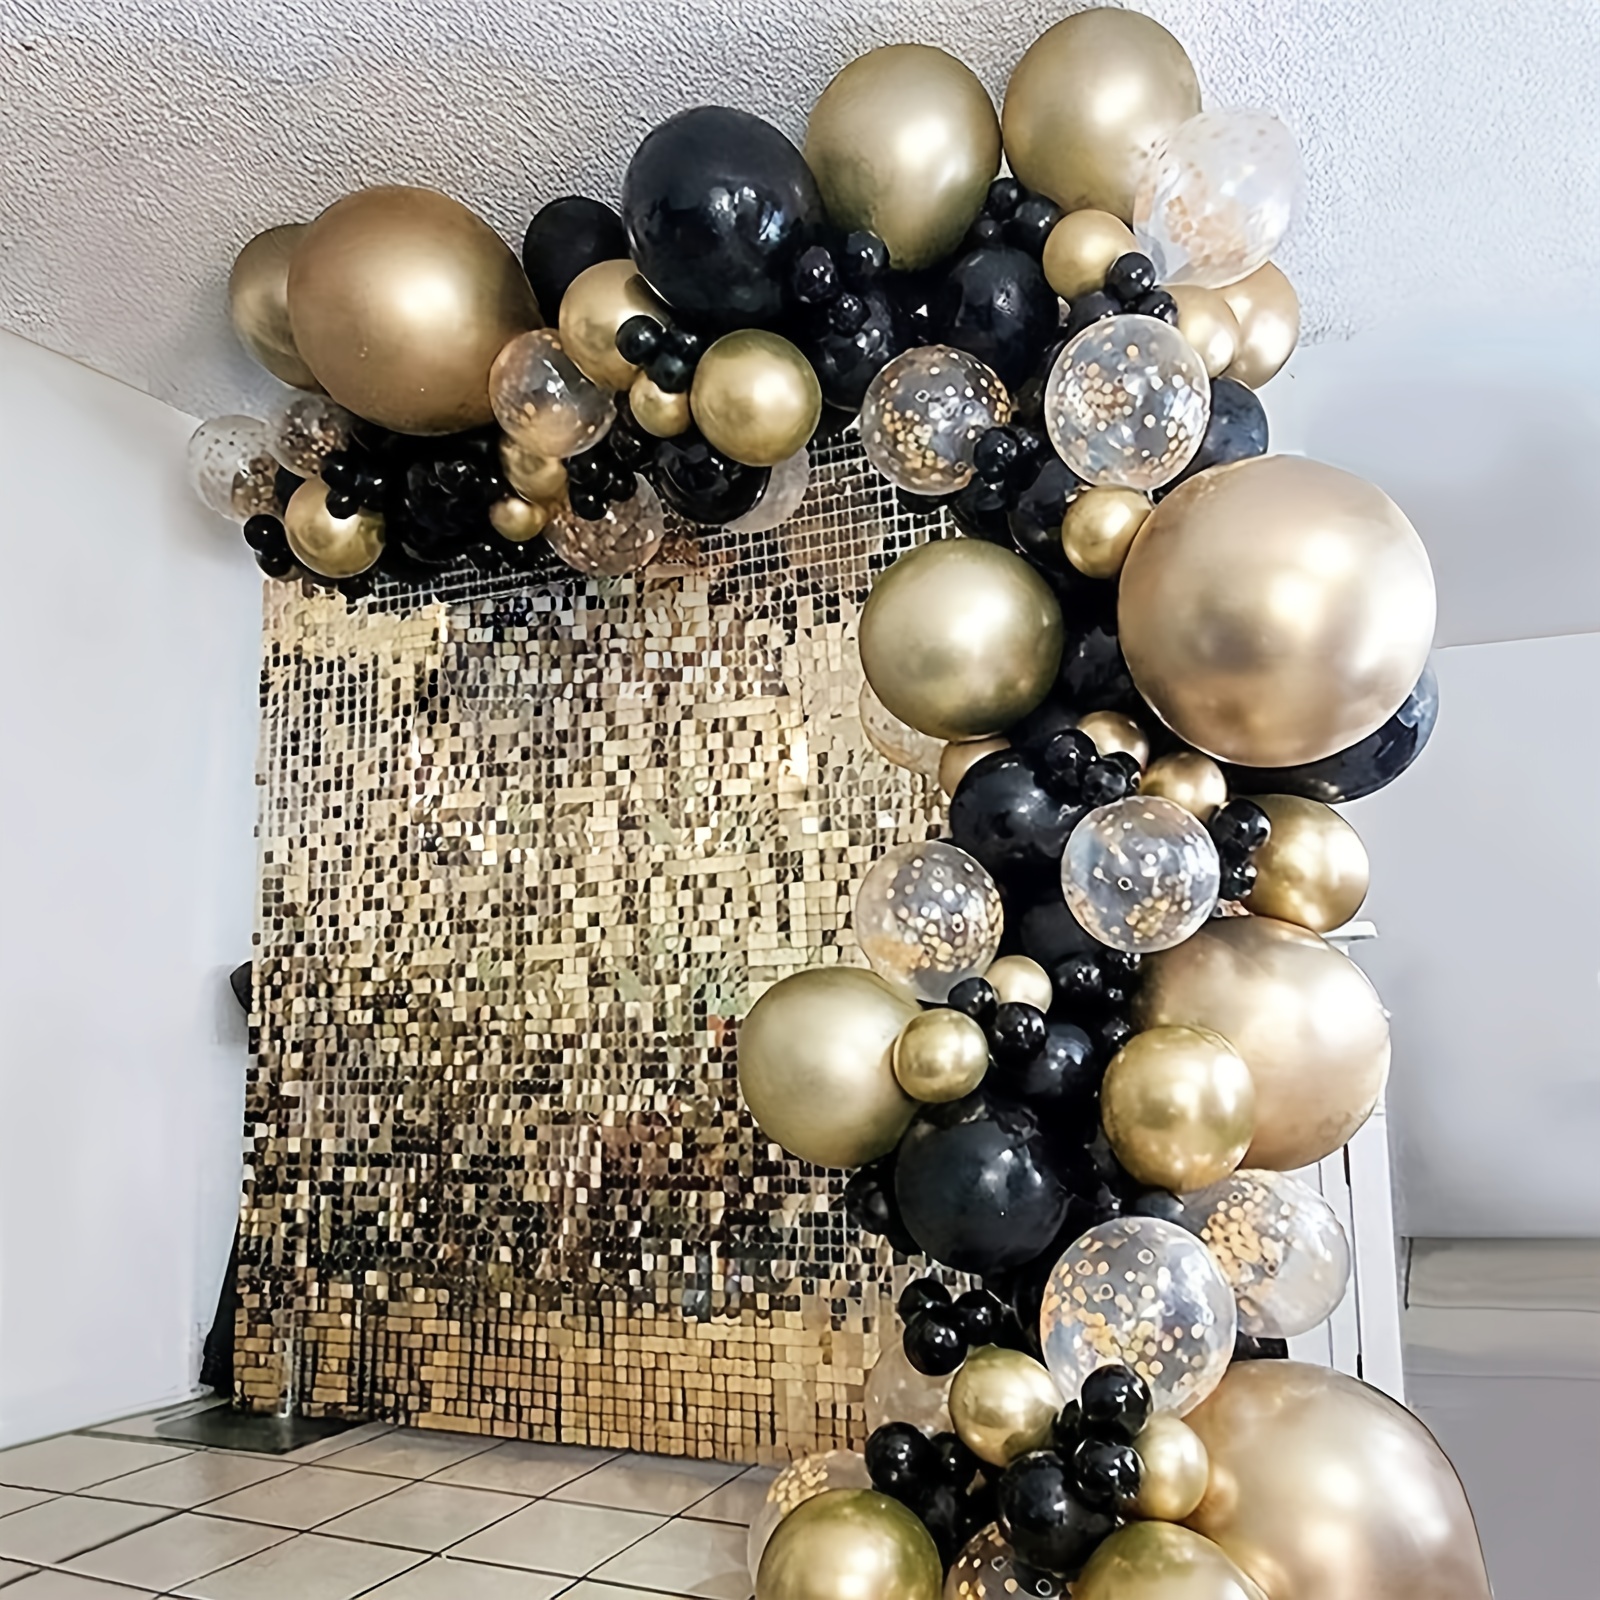 Juego de globos plateados para decoración de fiesta de cumpleaños